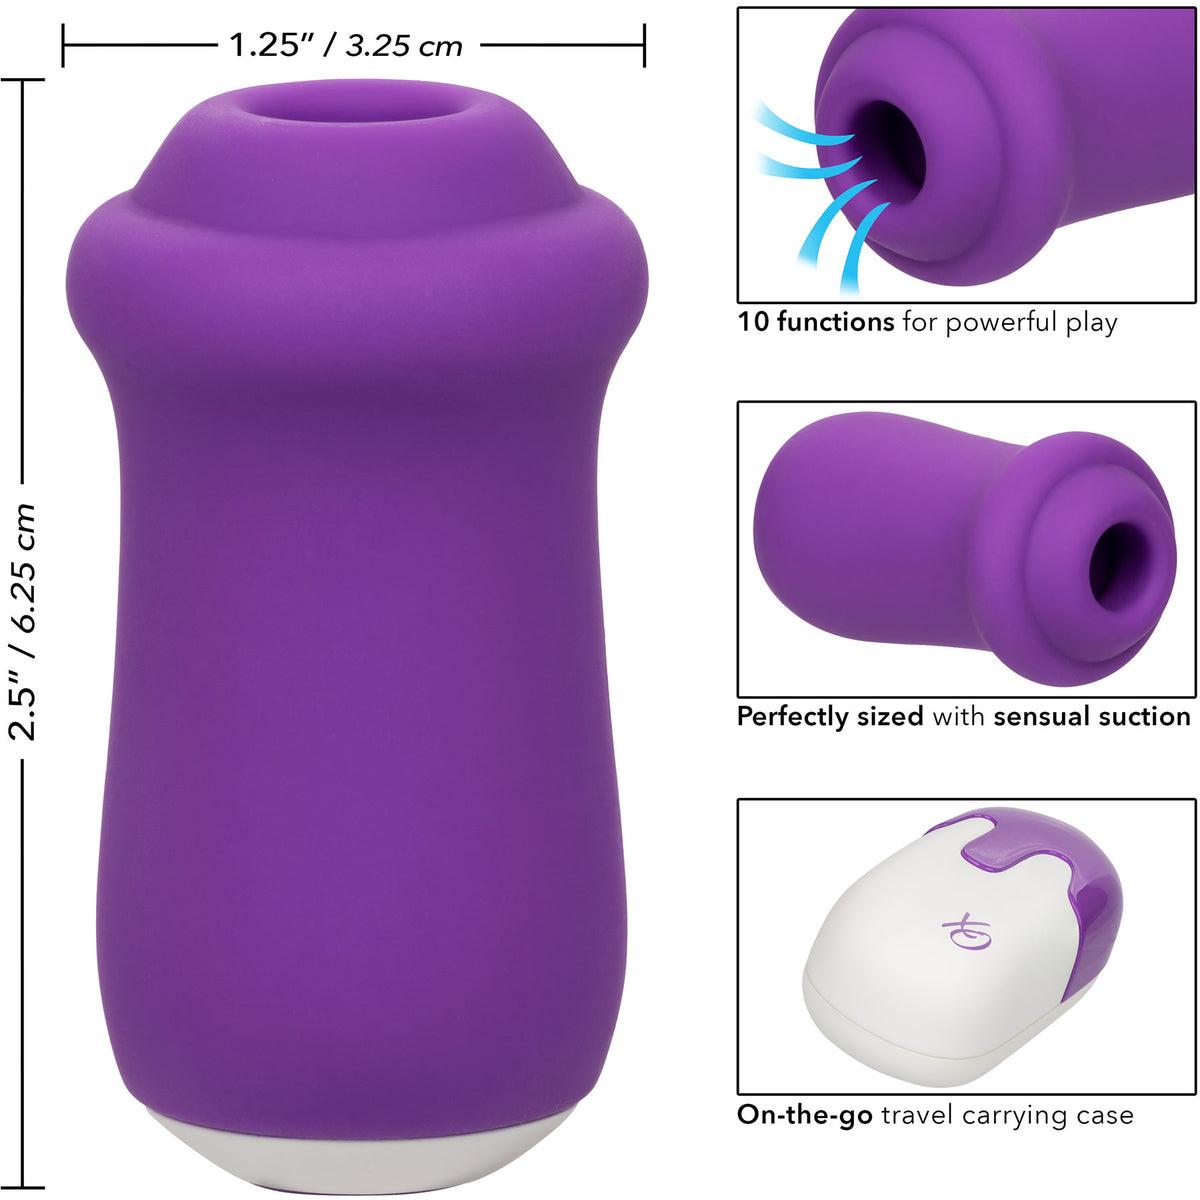 Sugar Rush Estimulador de Clitoris Purpura